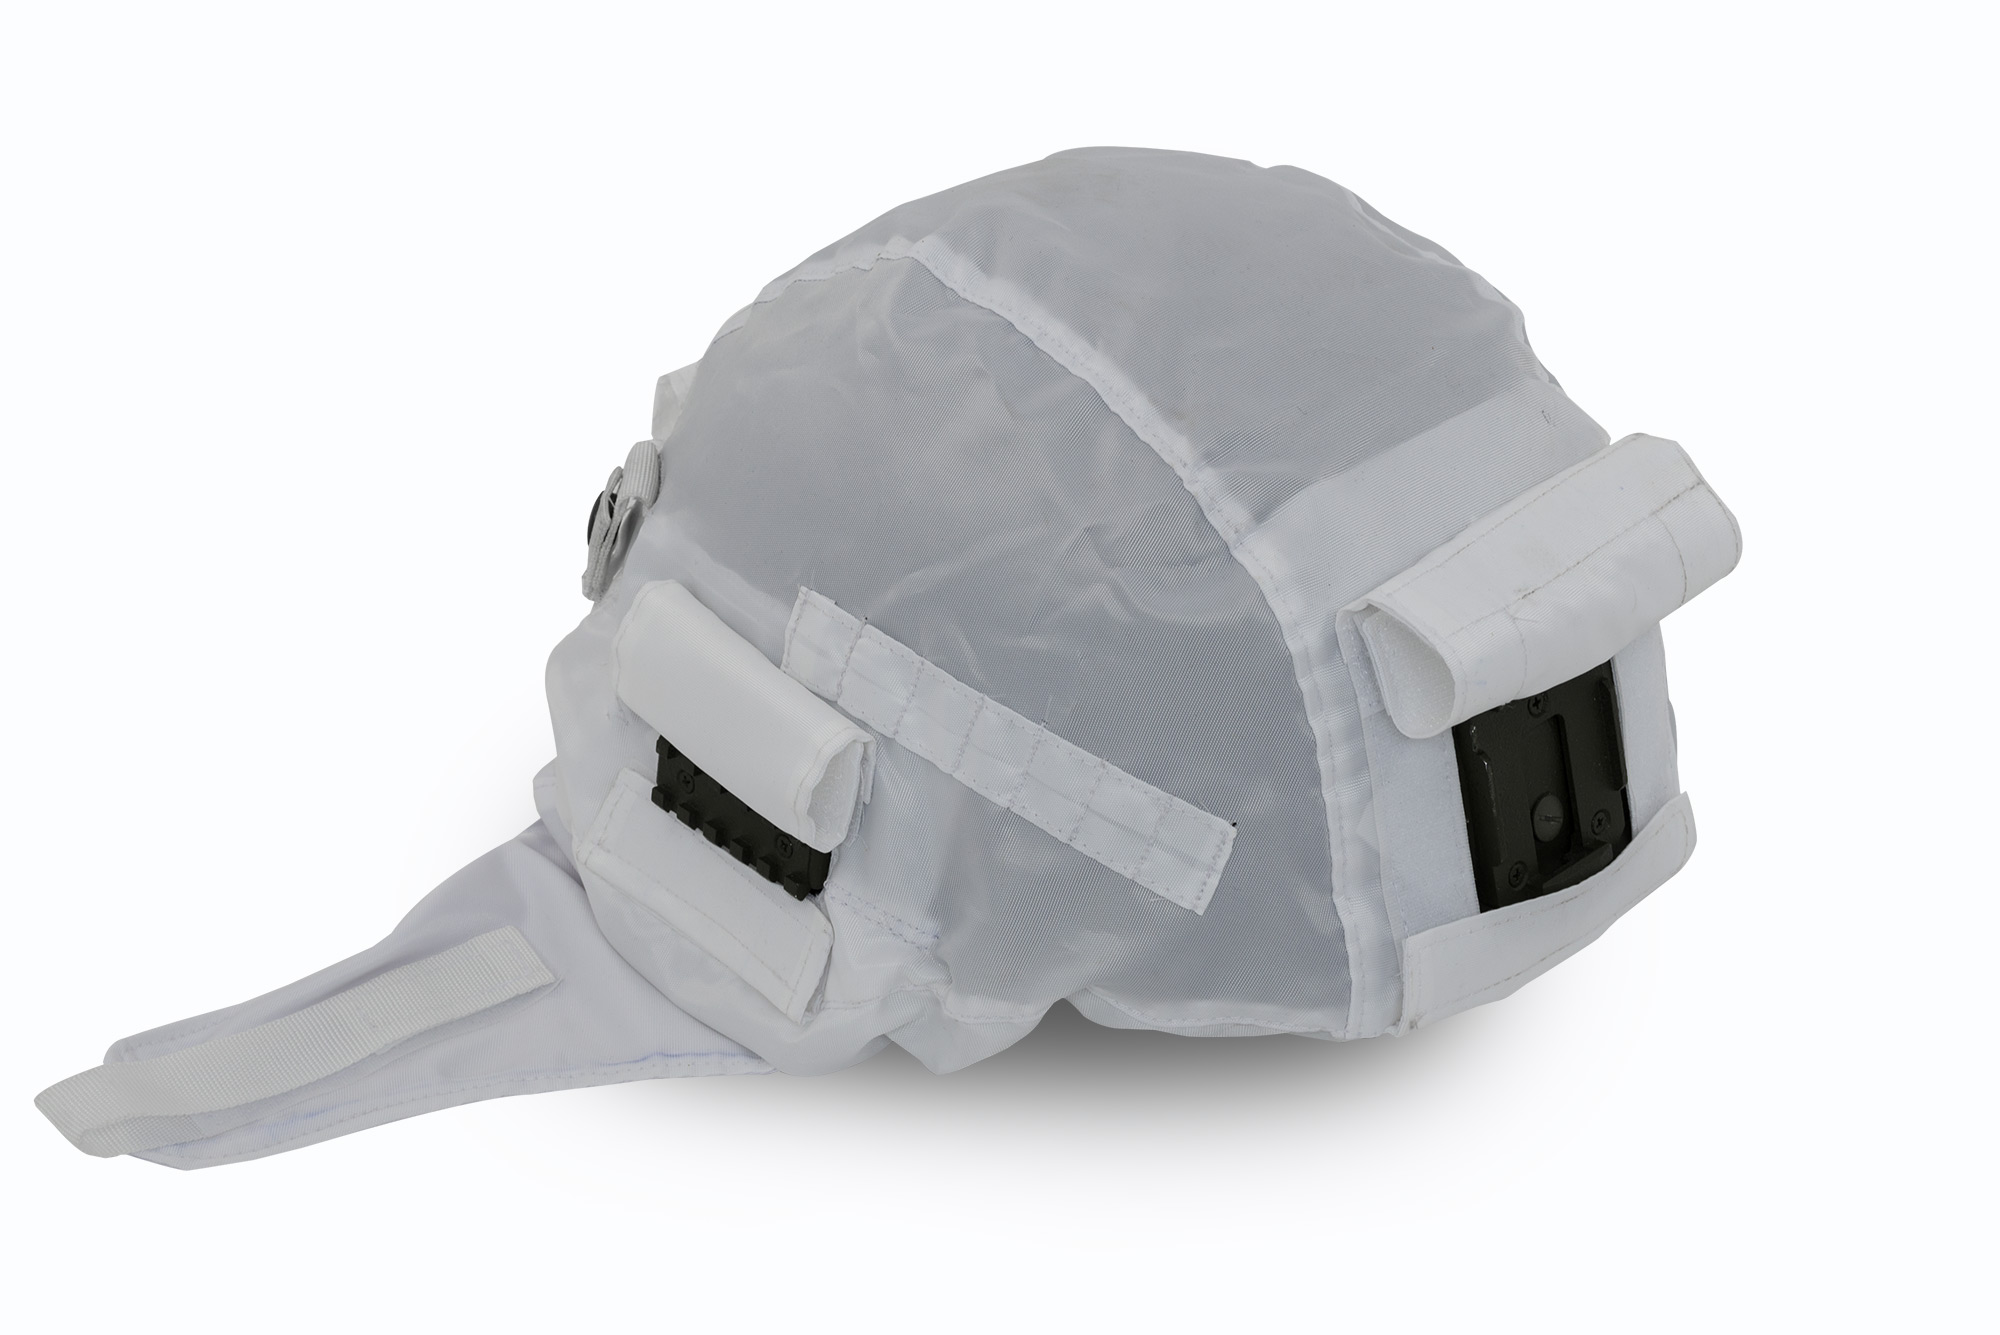 Чехол на шлем 6Б 47, Чехол на каску разработан для спецопераций. На нём сделаны отверстия для крепления к шлему различных приборов, империал швейное производство, купить в спб